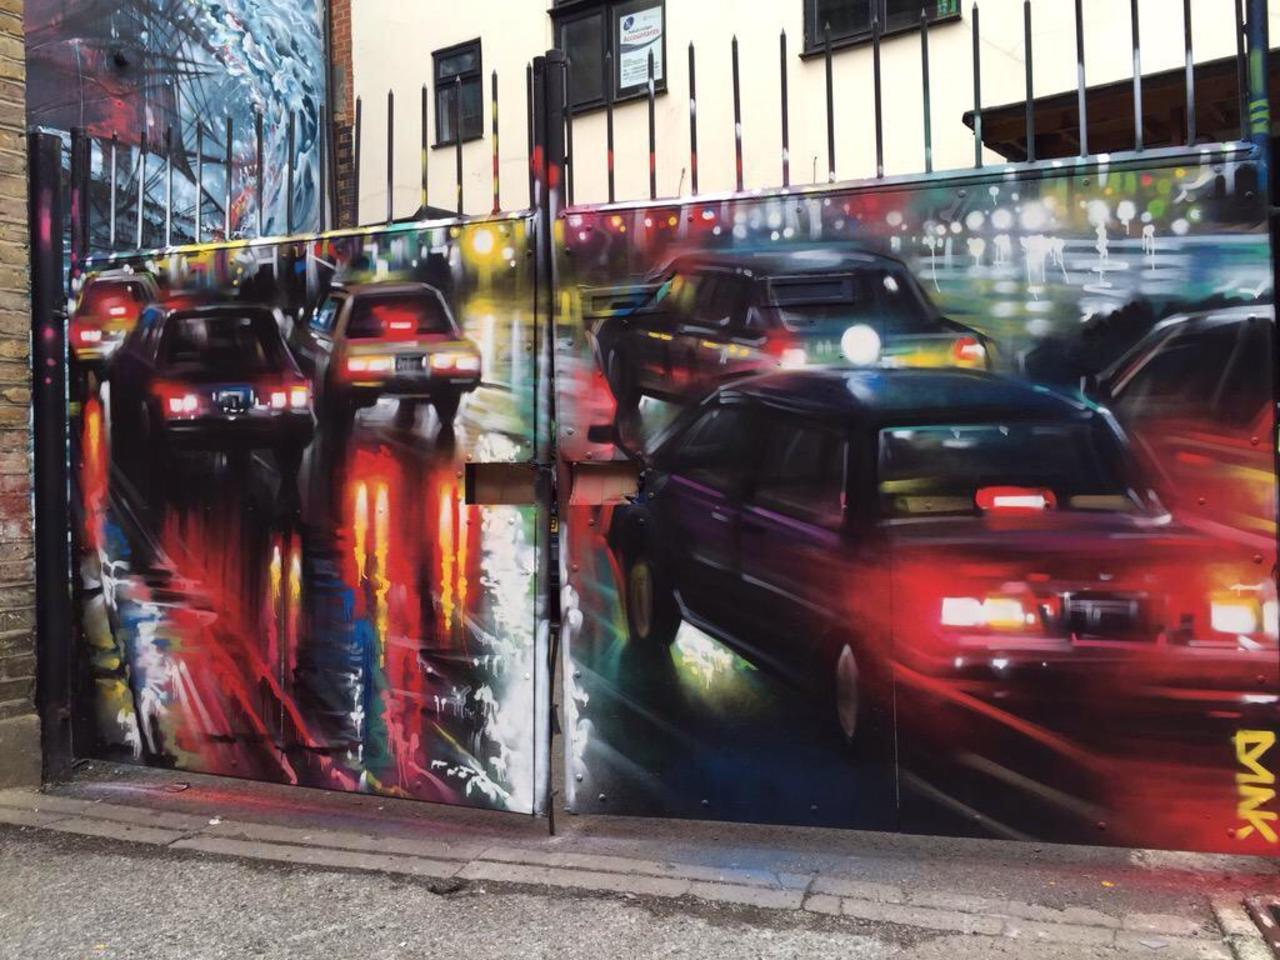 New Street Art by DanKitchener in Brick Lane London 

#art #graffiti #mural #streetart http://t.co/8ohv9GhGsr